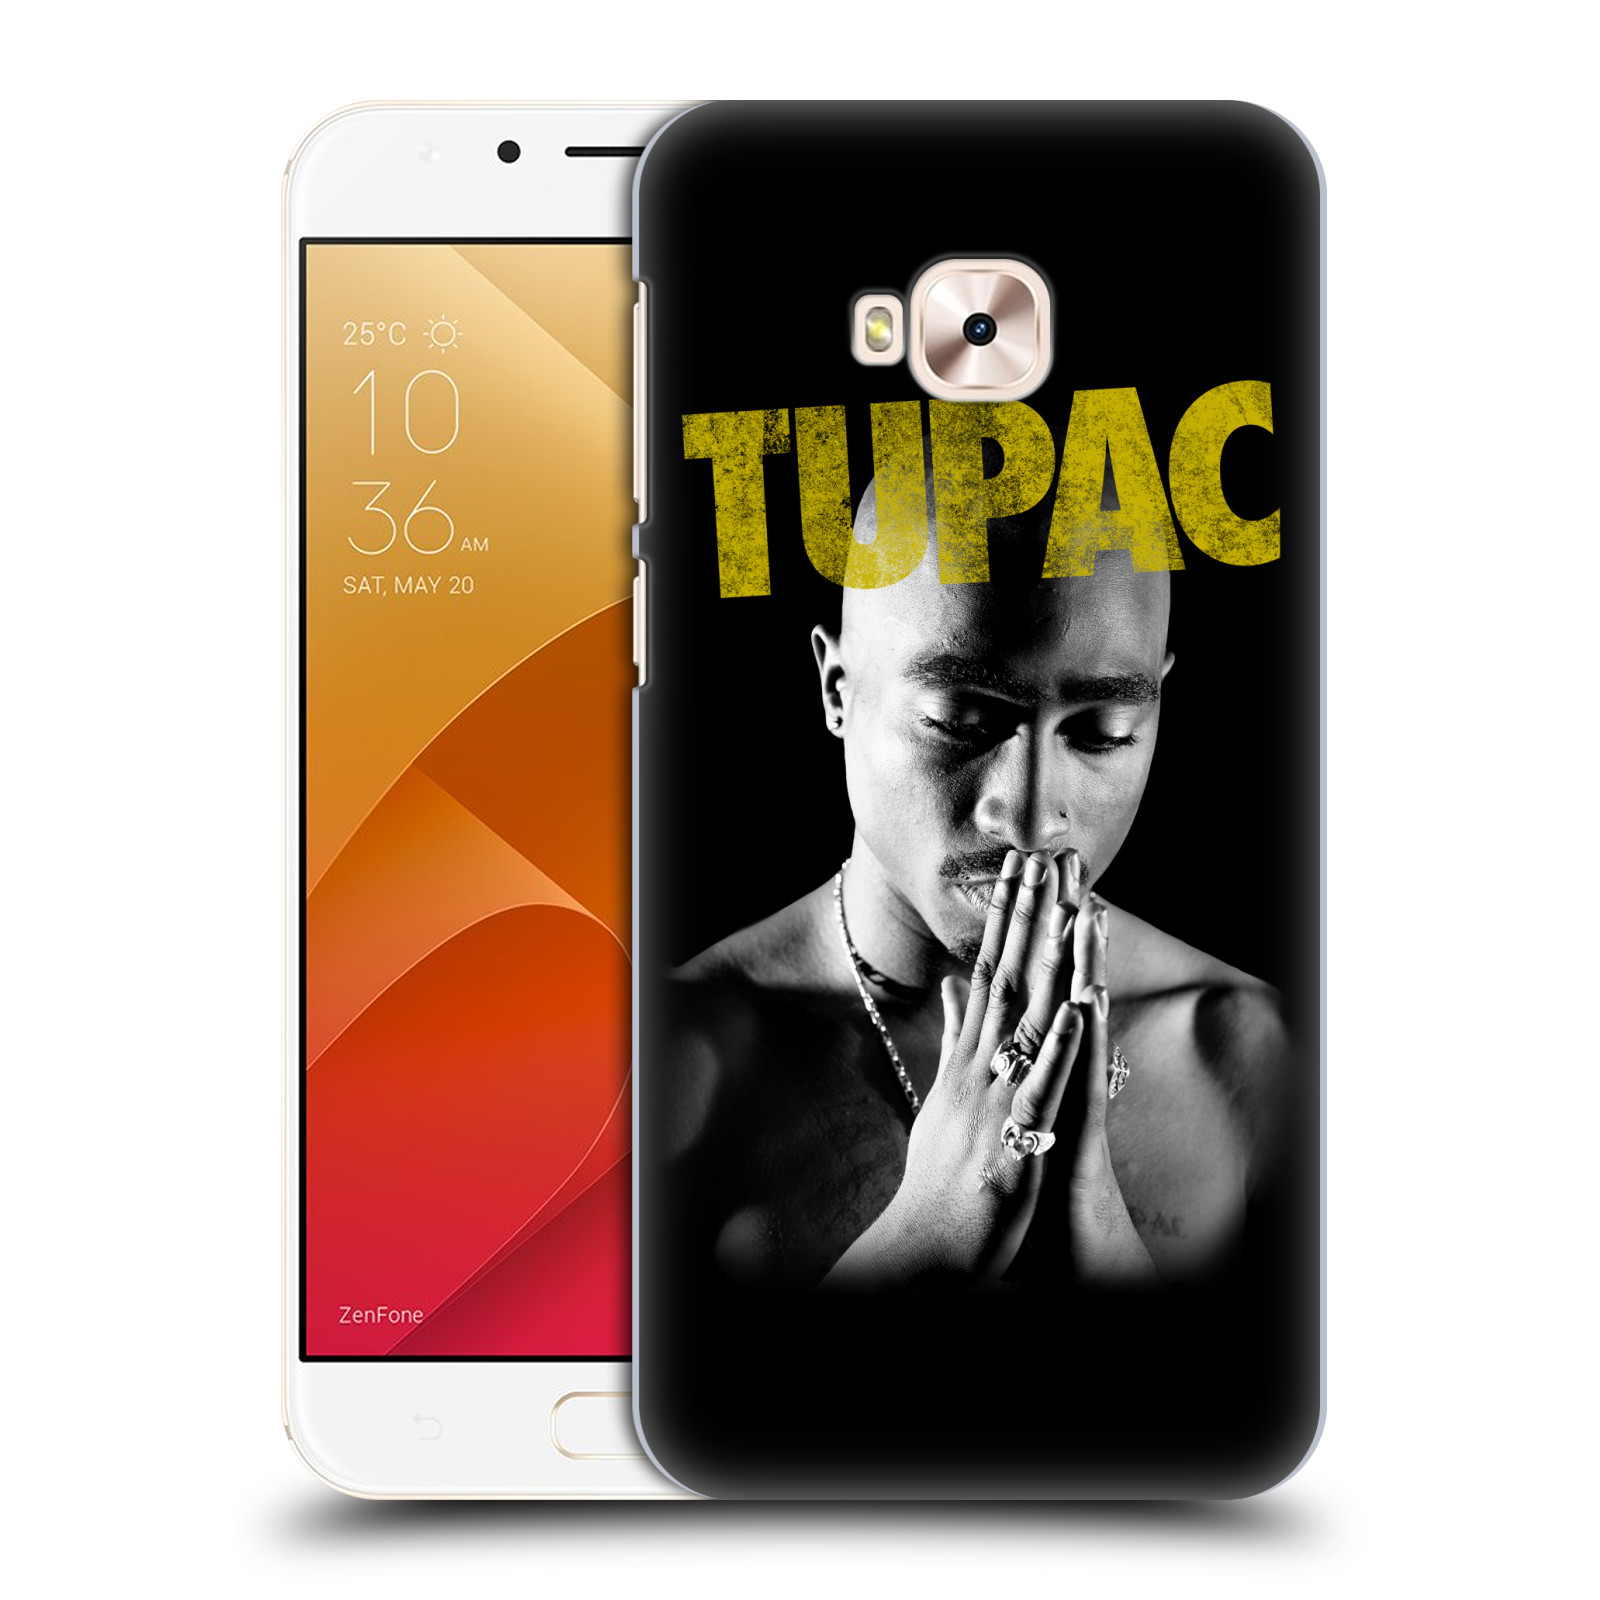 HEAD CASE plastový obal na mobil Asus Zenfone 4 Selfie Pro ZD552KL Zpěvák rapper Tupac Shakur 2Pac zlatý nadpis